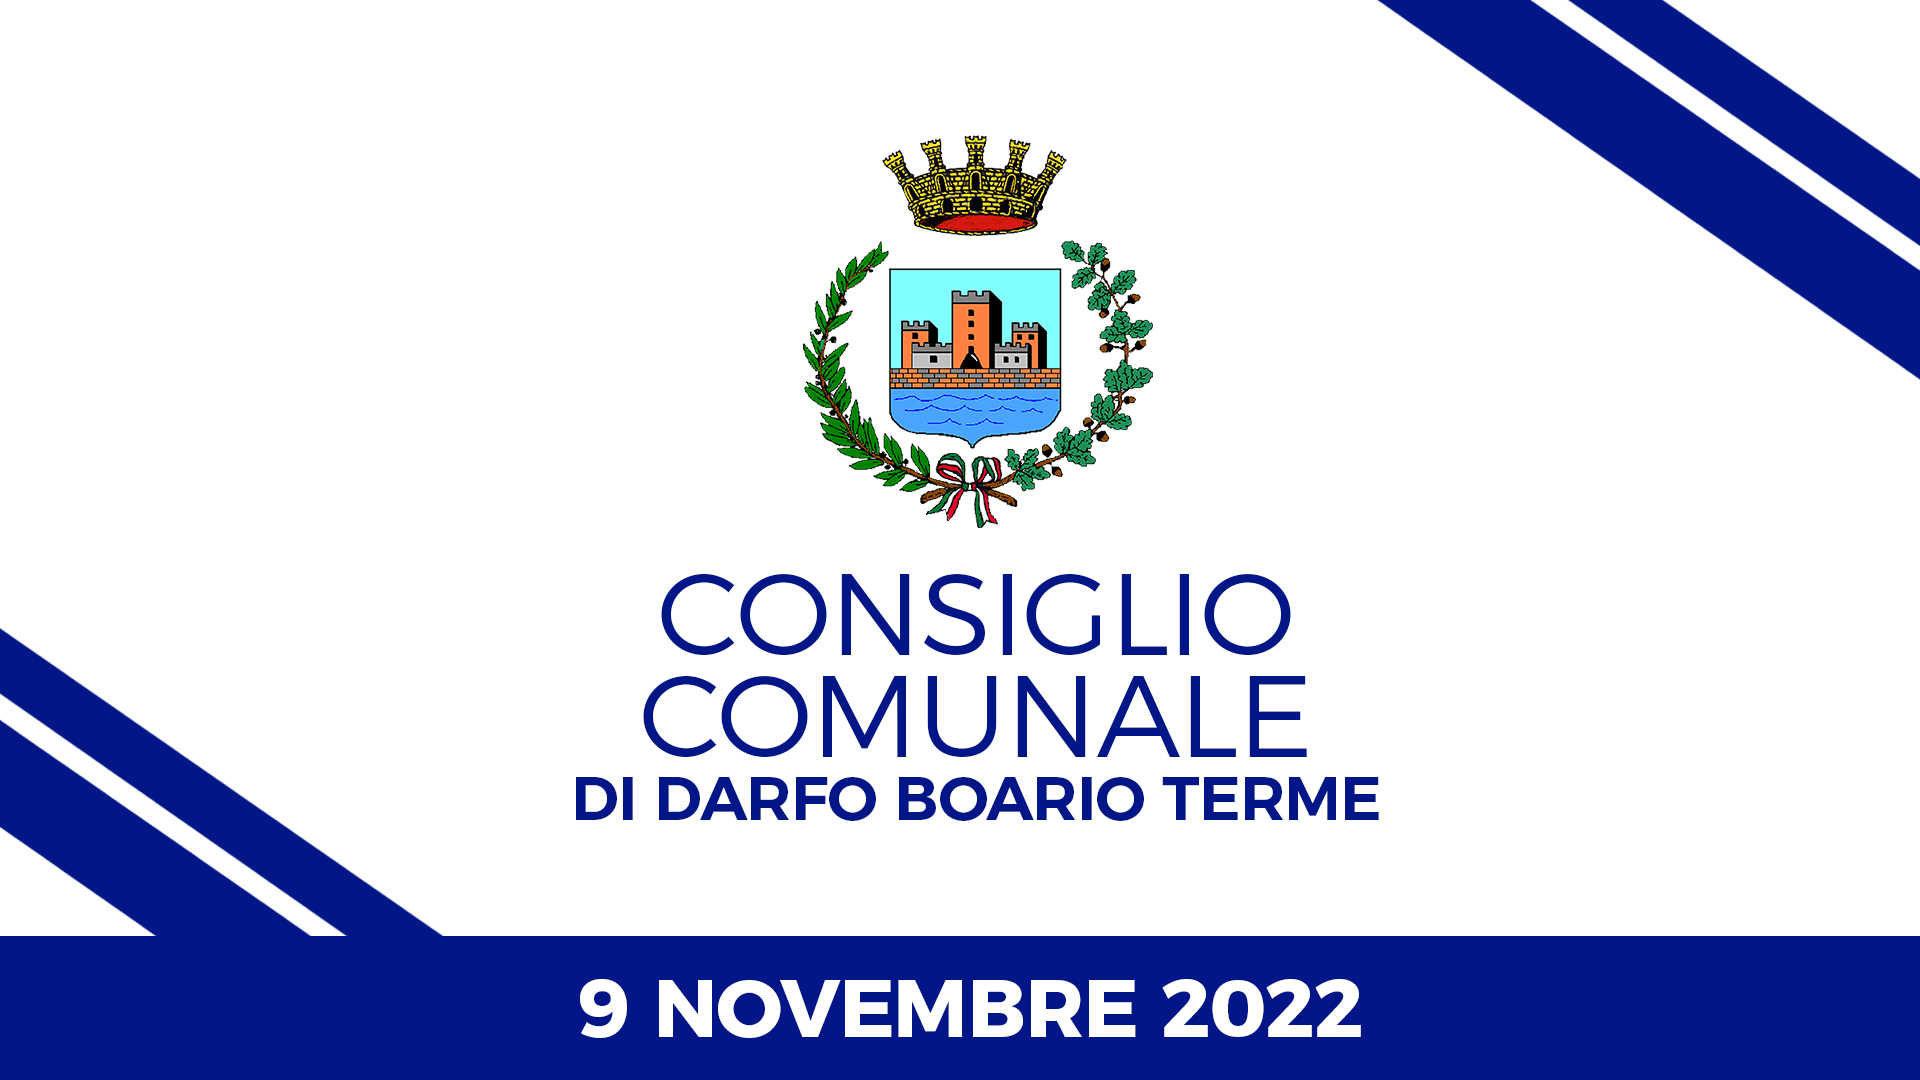 Consiglio Comunale di Darfo Boario Terme del 09 novembre 2022